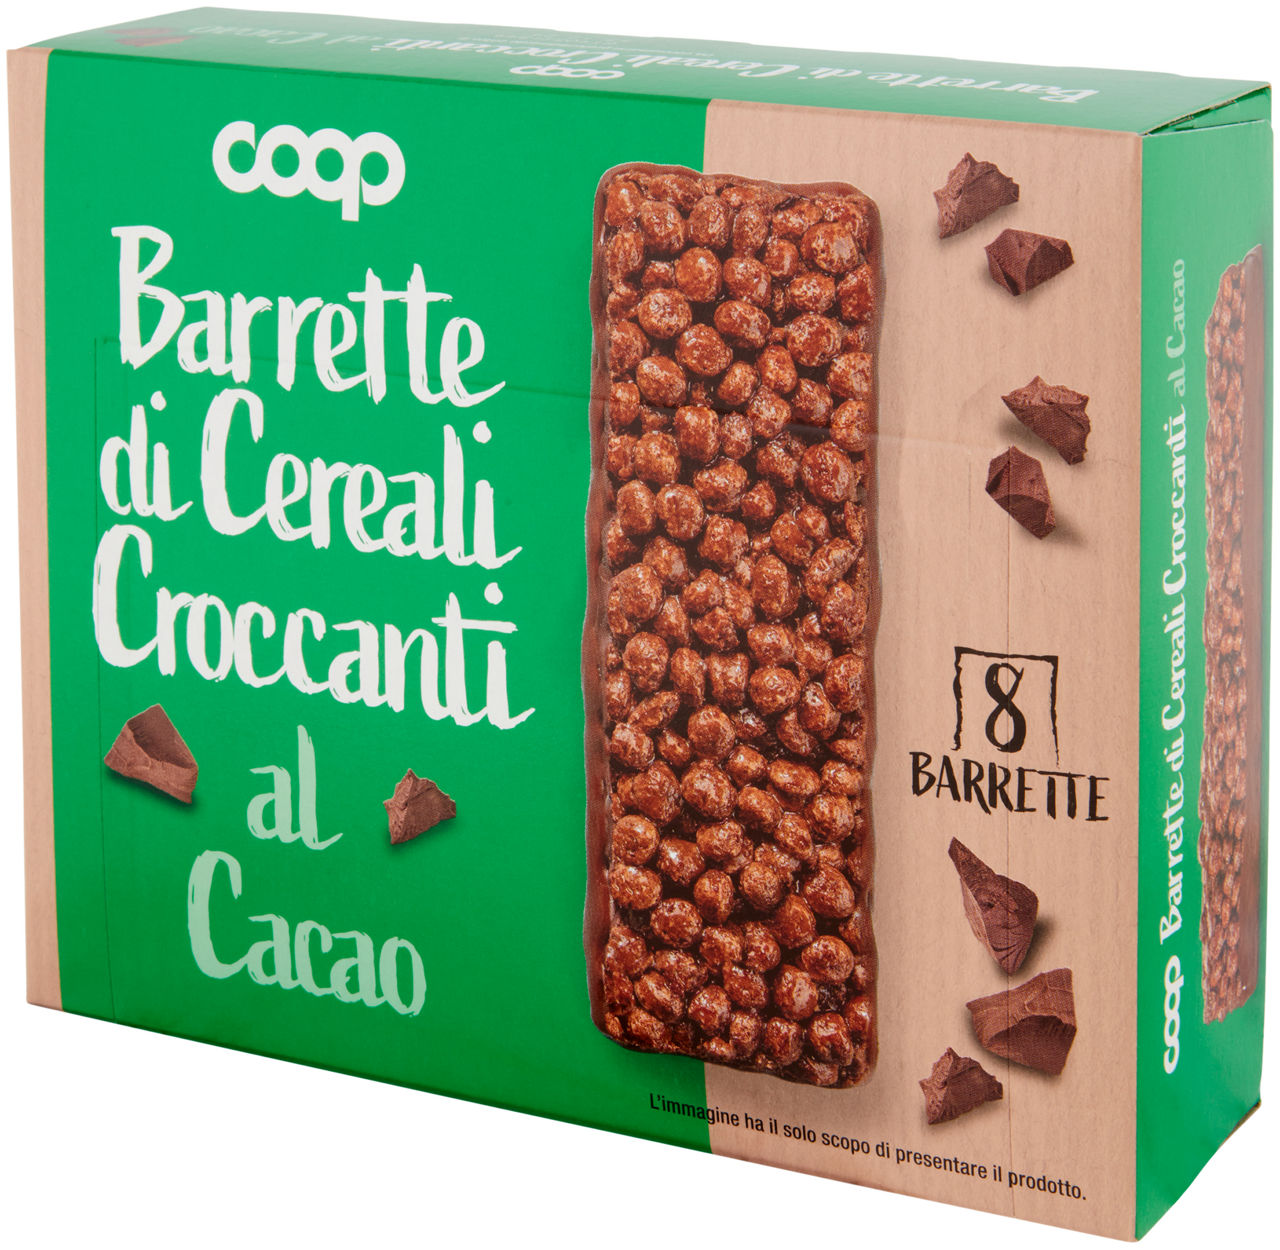 Barrette di cereali croccanti al cacao 8 x 20 g - 6